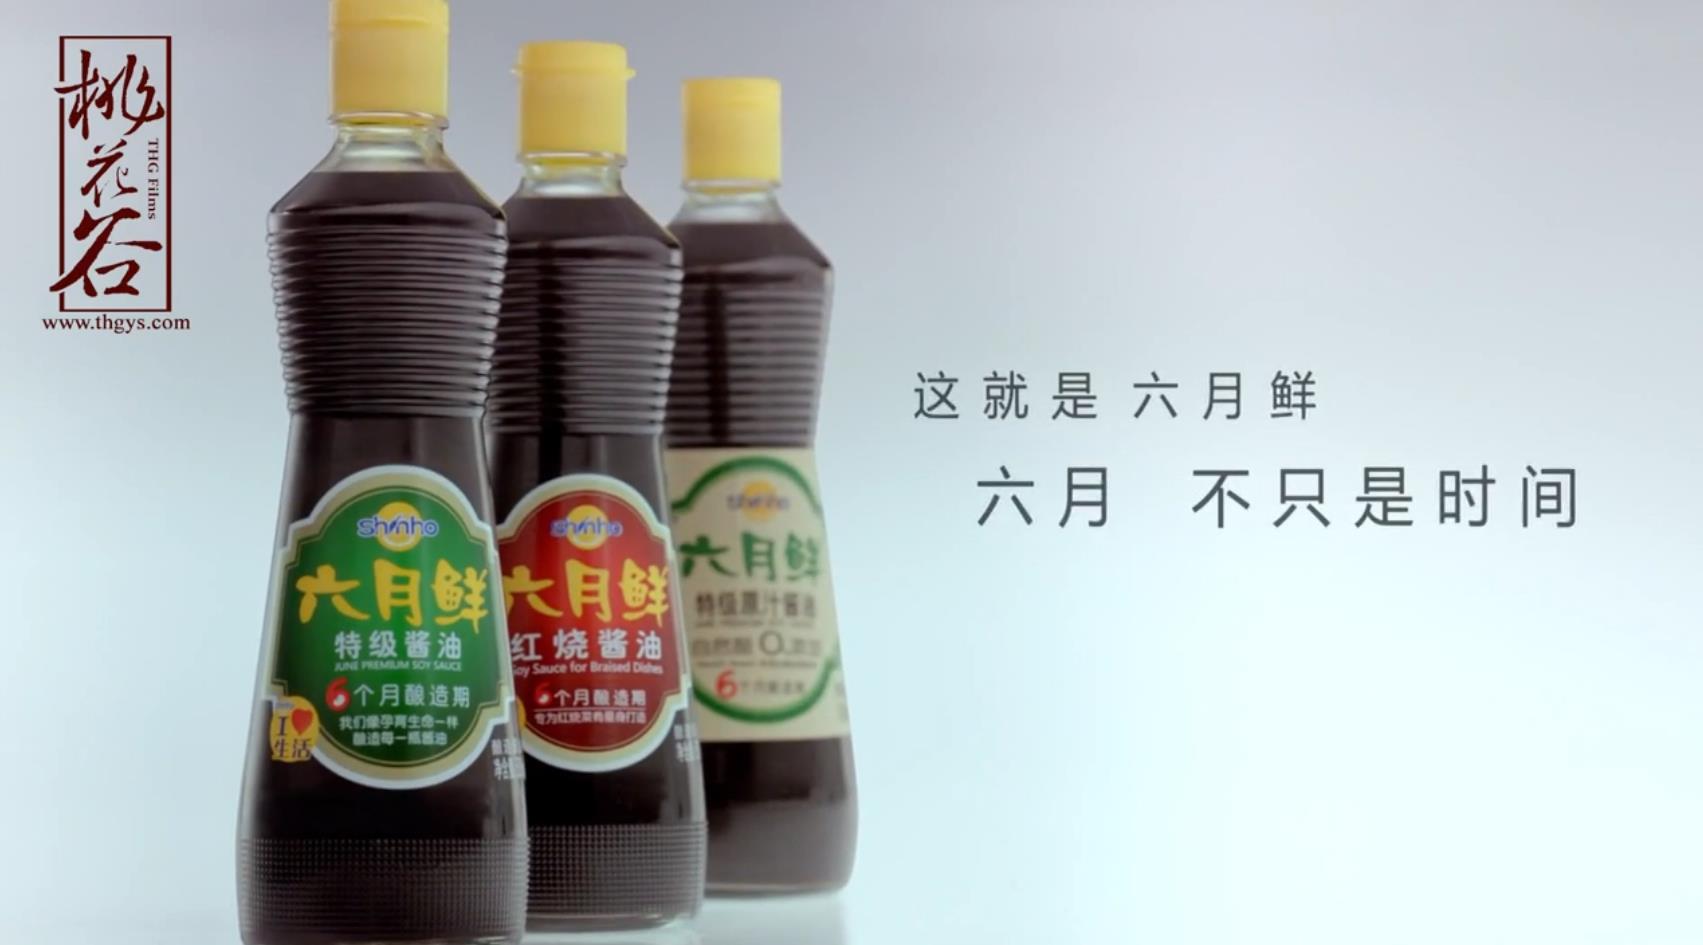 欣和六月鲜酱油-反射篇广告